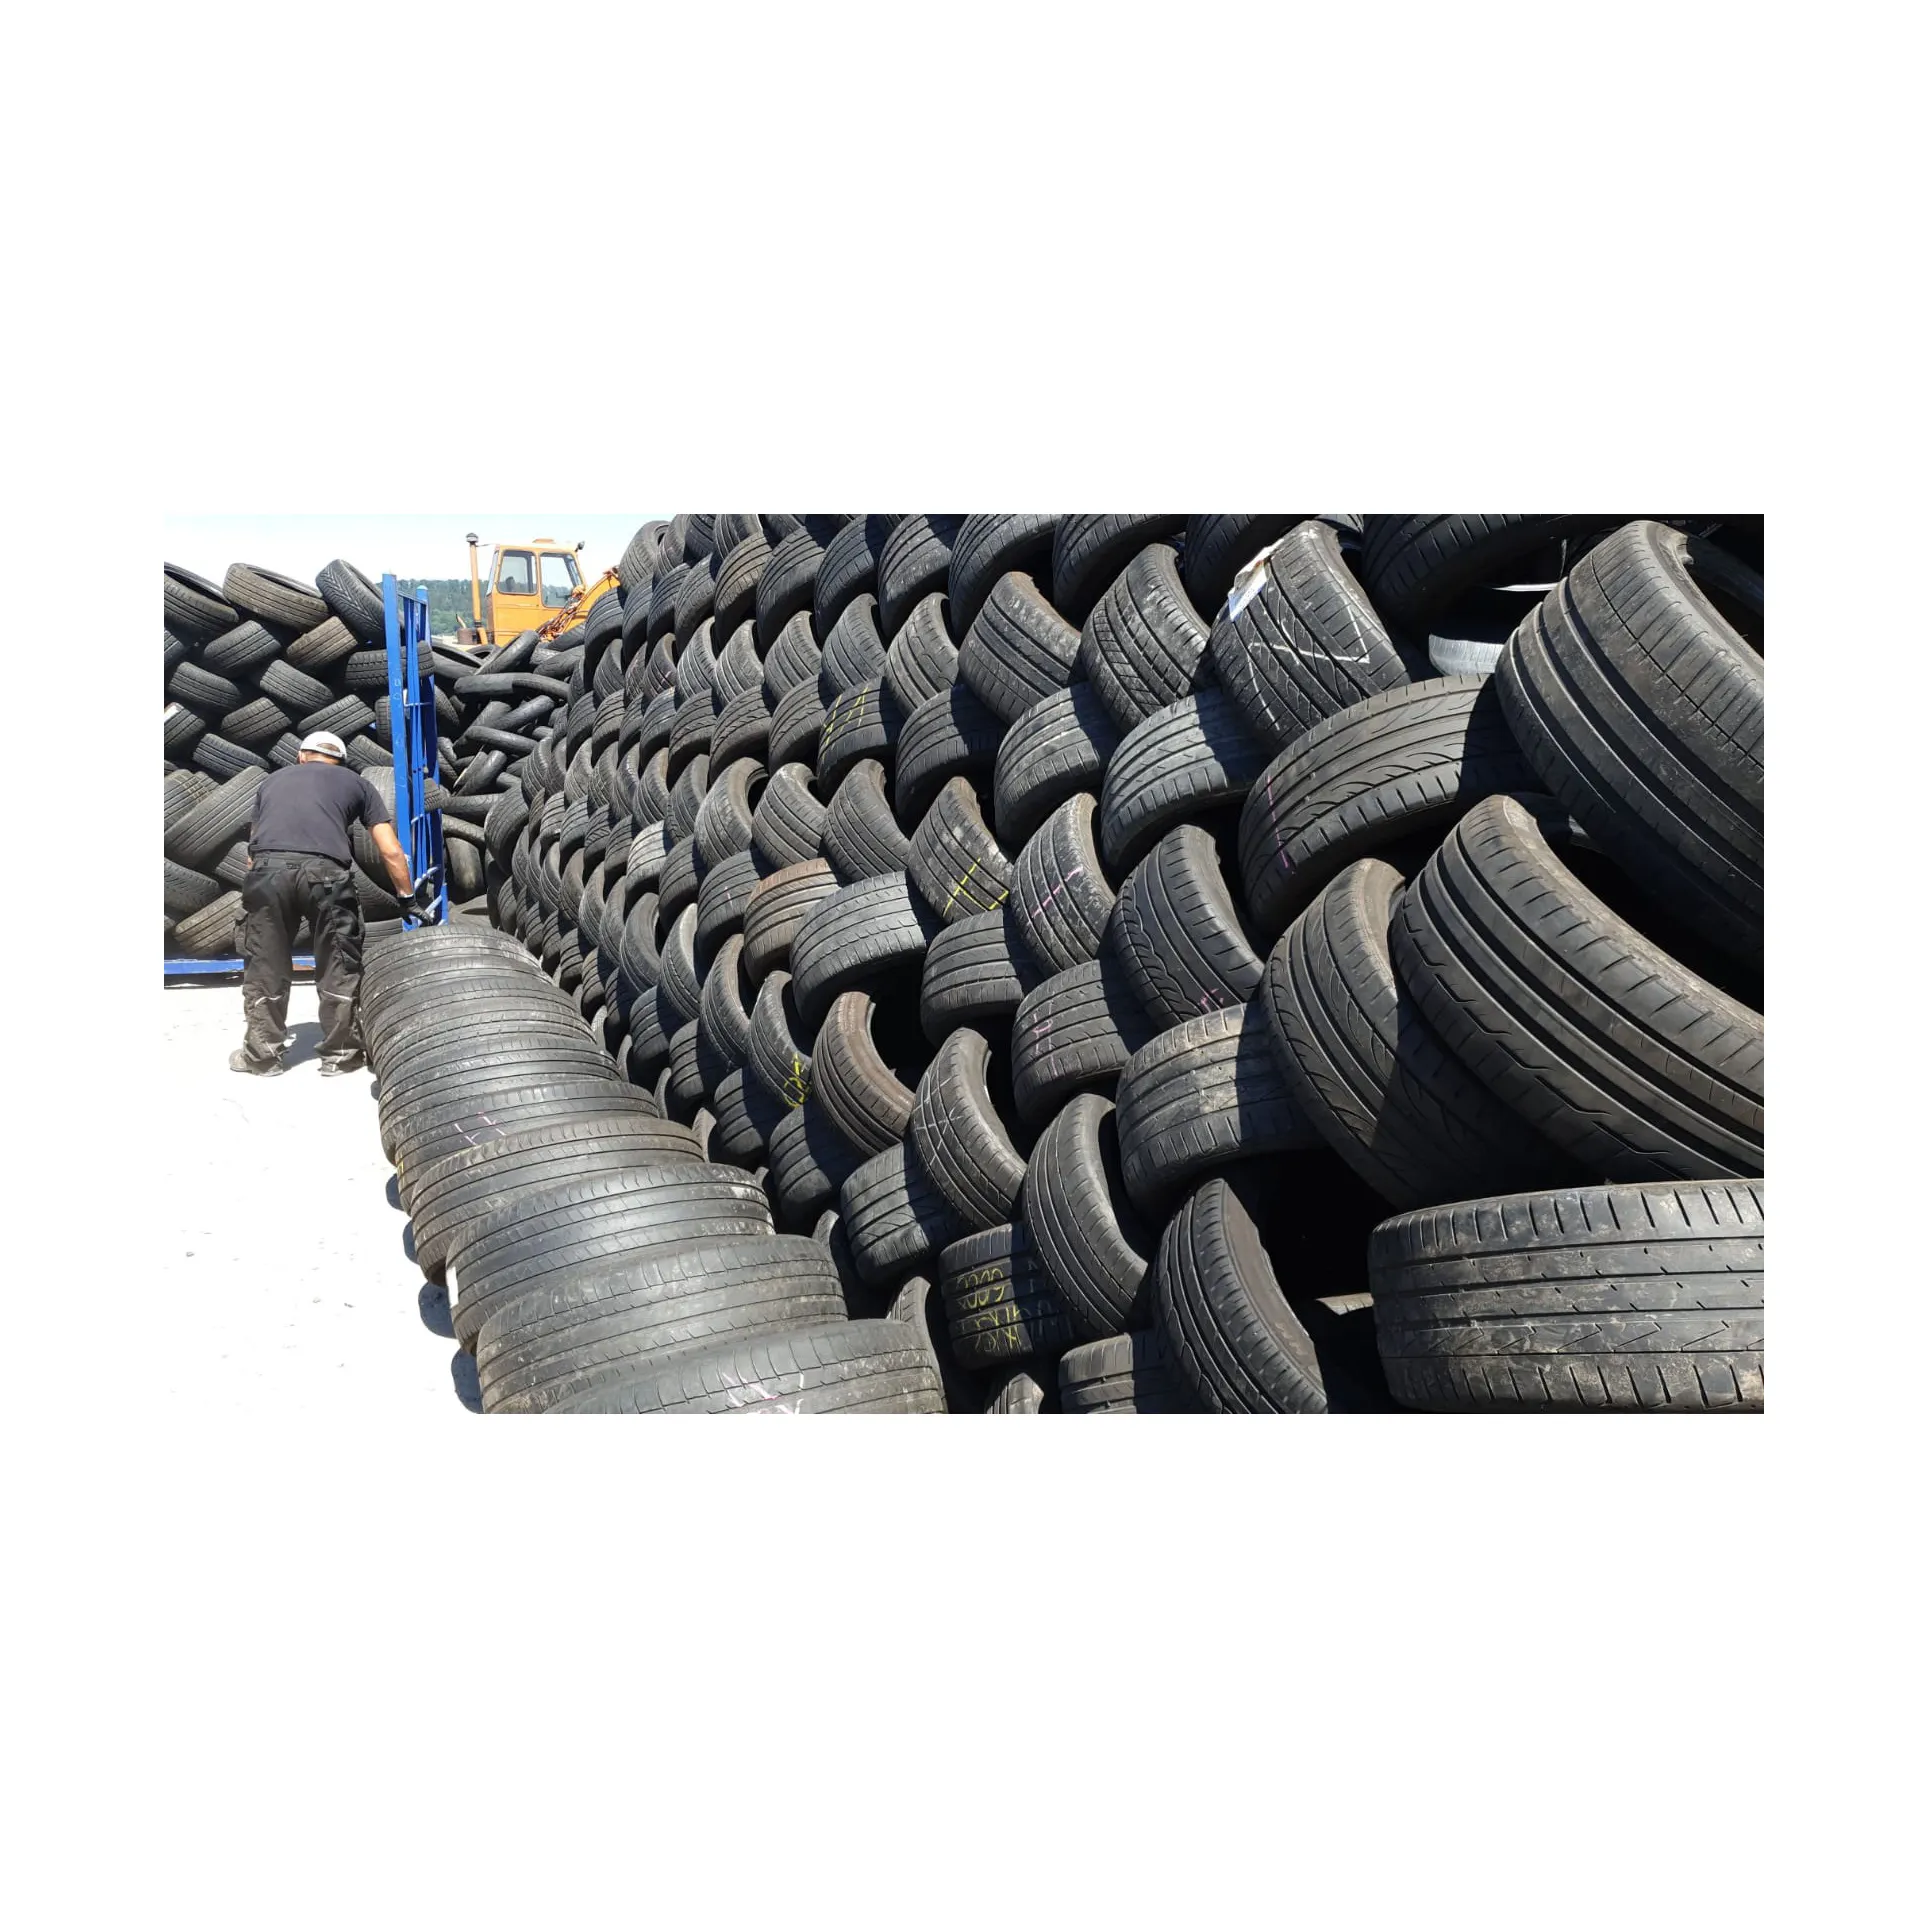 सस्ते सेकेंड हैंड टायर खरीदें, प्रयुक्त मोटरसाइकिल टायर, प्रयुक्त रबर ट्रक टायर तुराक टायर - प्रयुक्त टायर जर्मनी से निर्यात किए जाते हैं